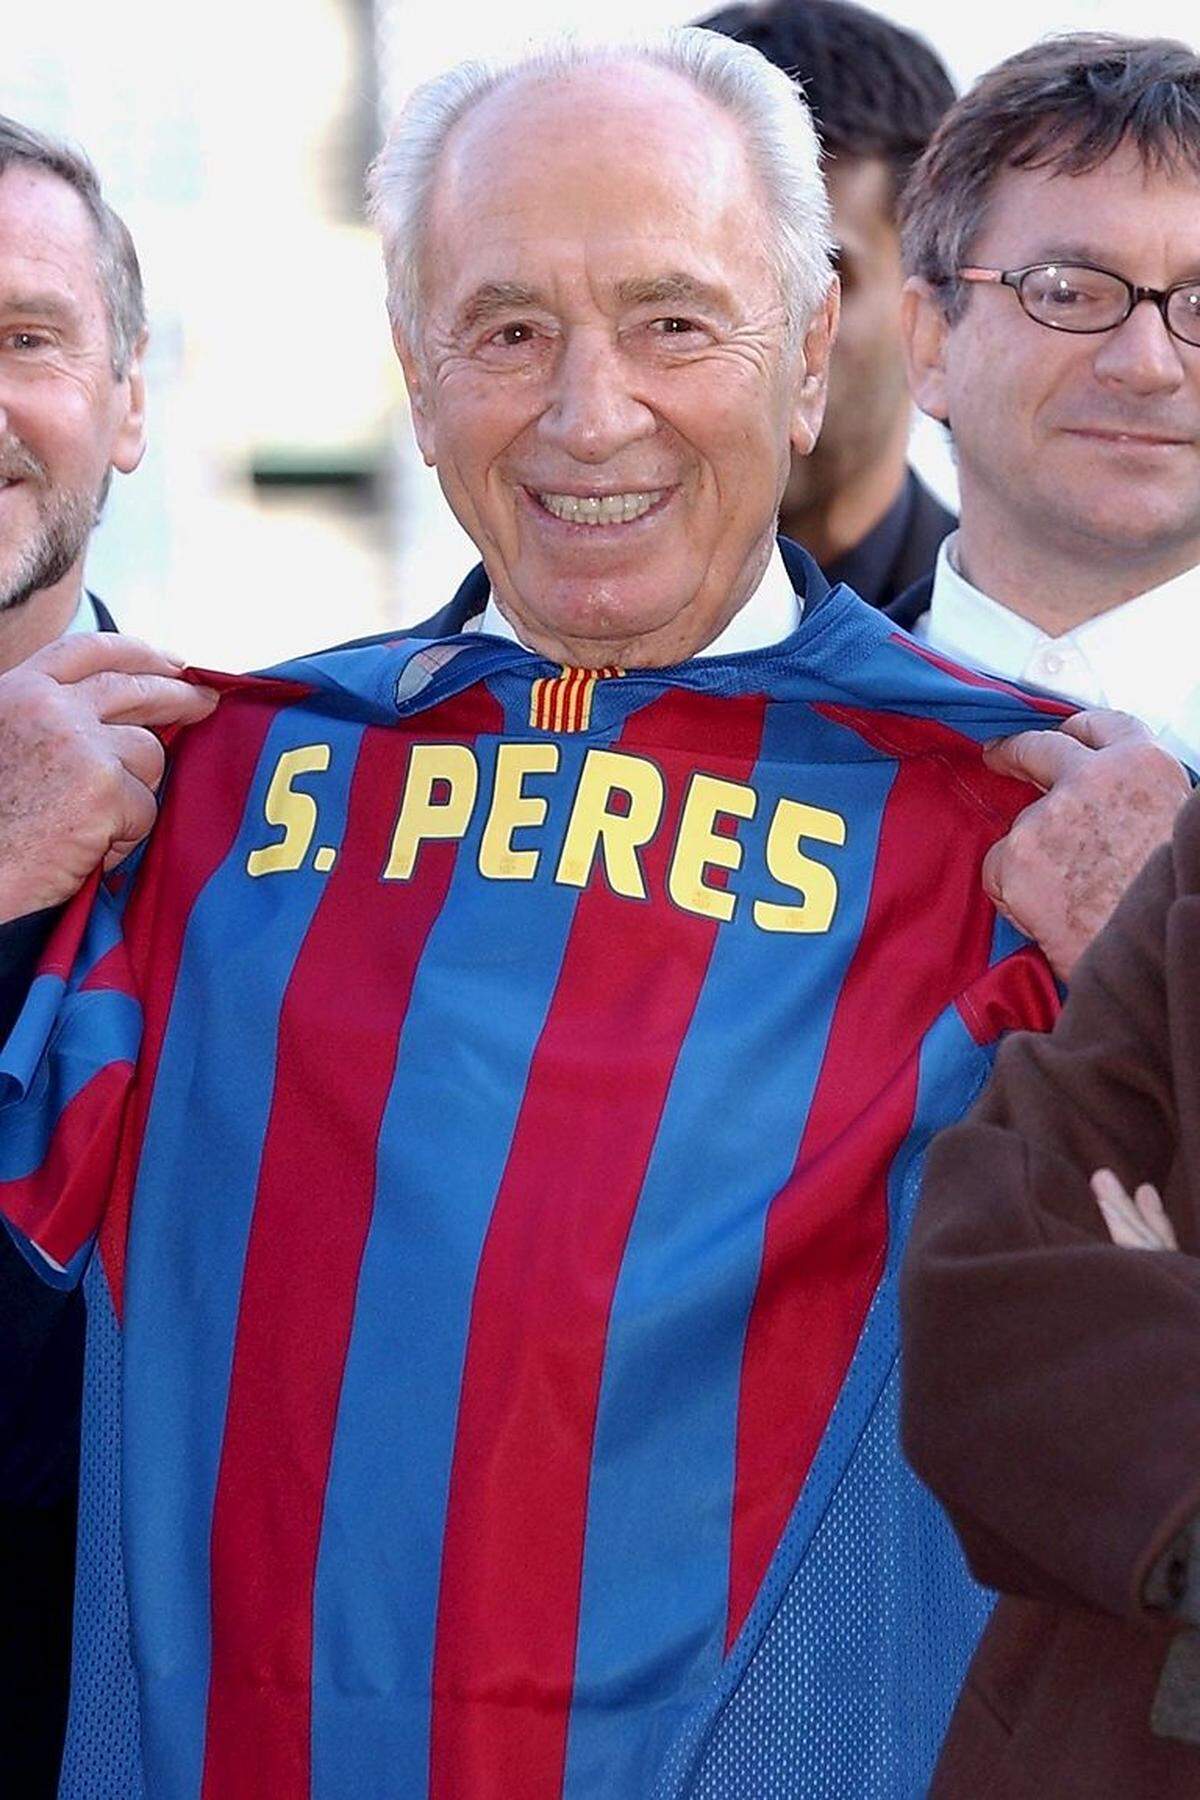 Zumindest auf dem Fußballplatz herrschte Frieden: Am 20. November 2005 spielte der FC Barcelona ein "Match für den Frieden" gegen eine israelisch-palästinensische Auswahl. Ehrengast: Shimon Peres, dem vor dem Spiel ein Barca-Trikot mit seinem Namenszug überreicht wurde.